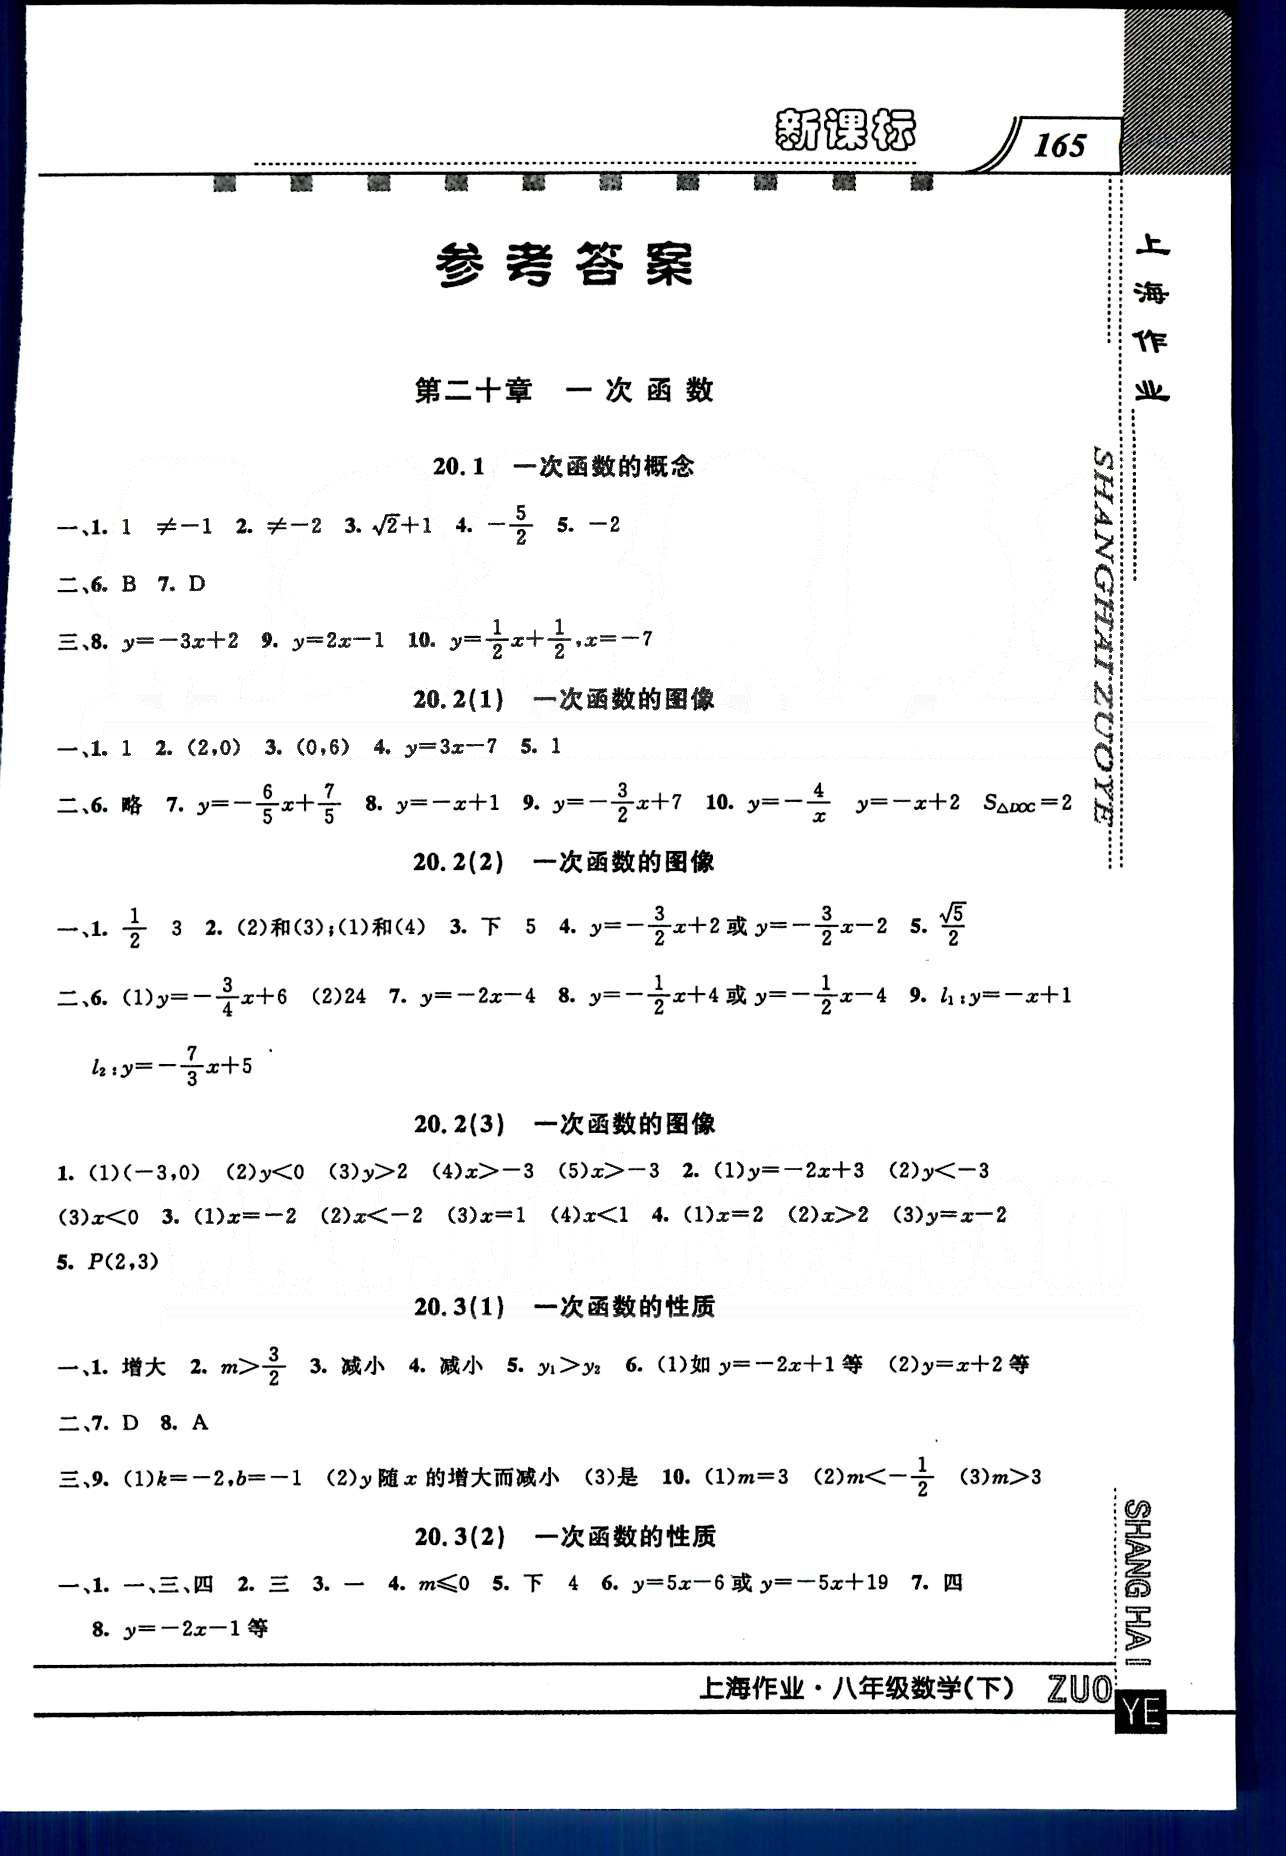 20145 钟书金牌 上海作业八年级下数学上海大学出版社 第二十章-第二十三章 [1]